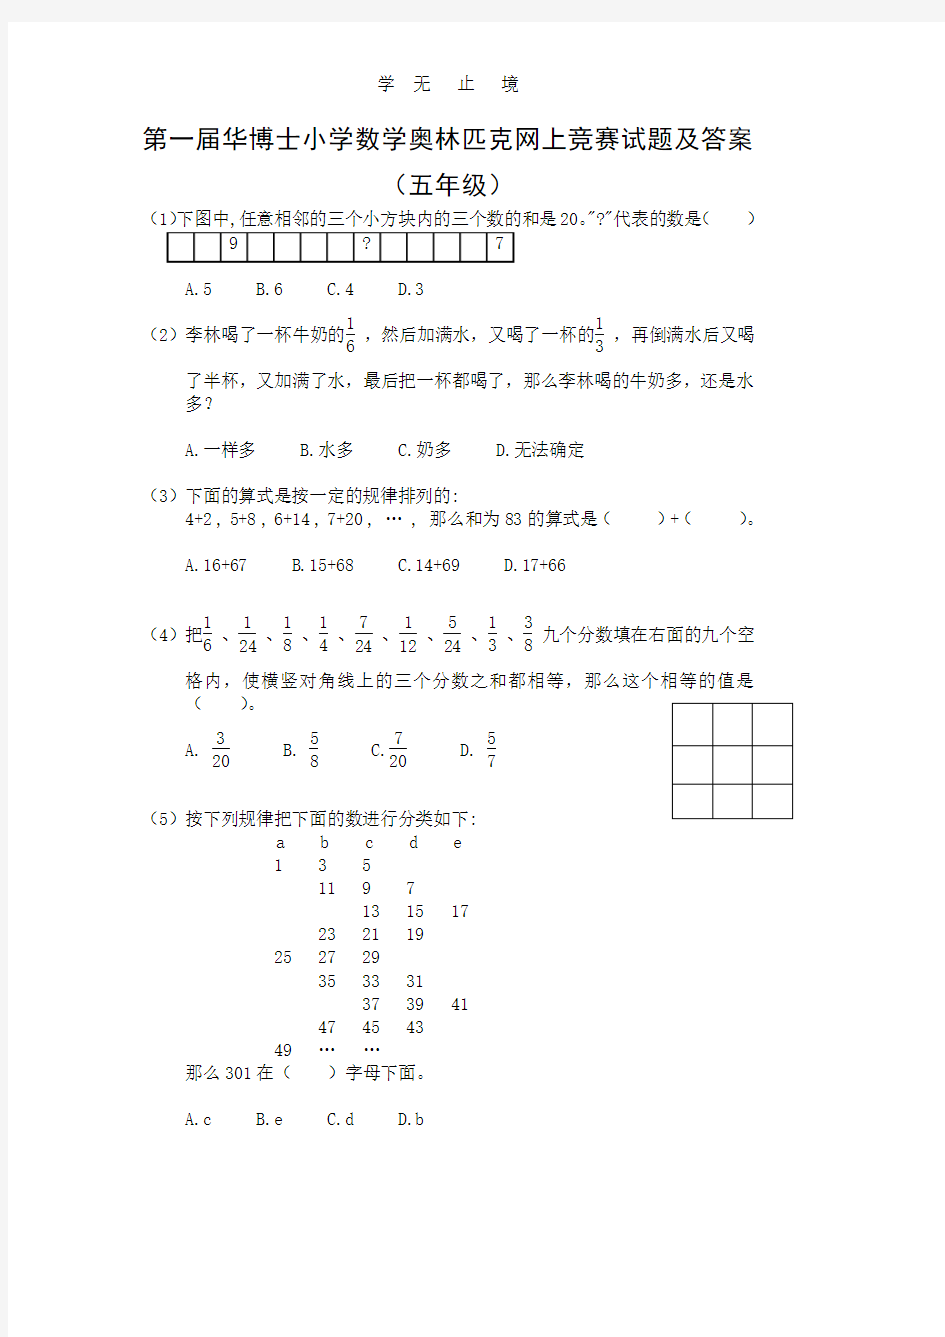 第1届华博士小学数学奥林匹克竞赛-5年级直接打印版.pdf